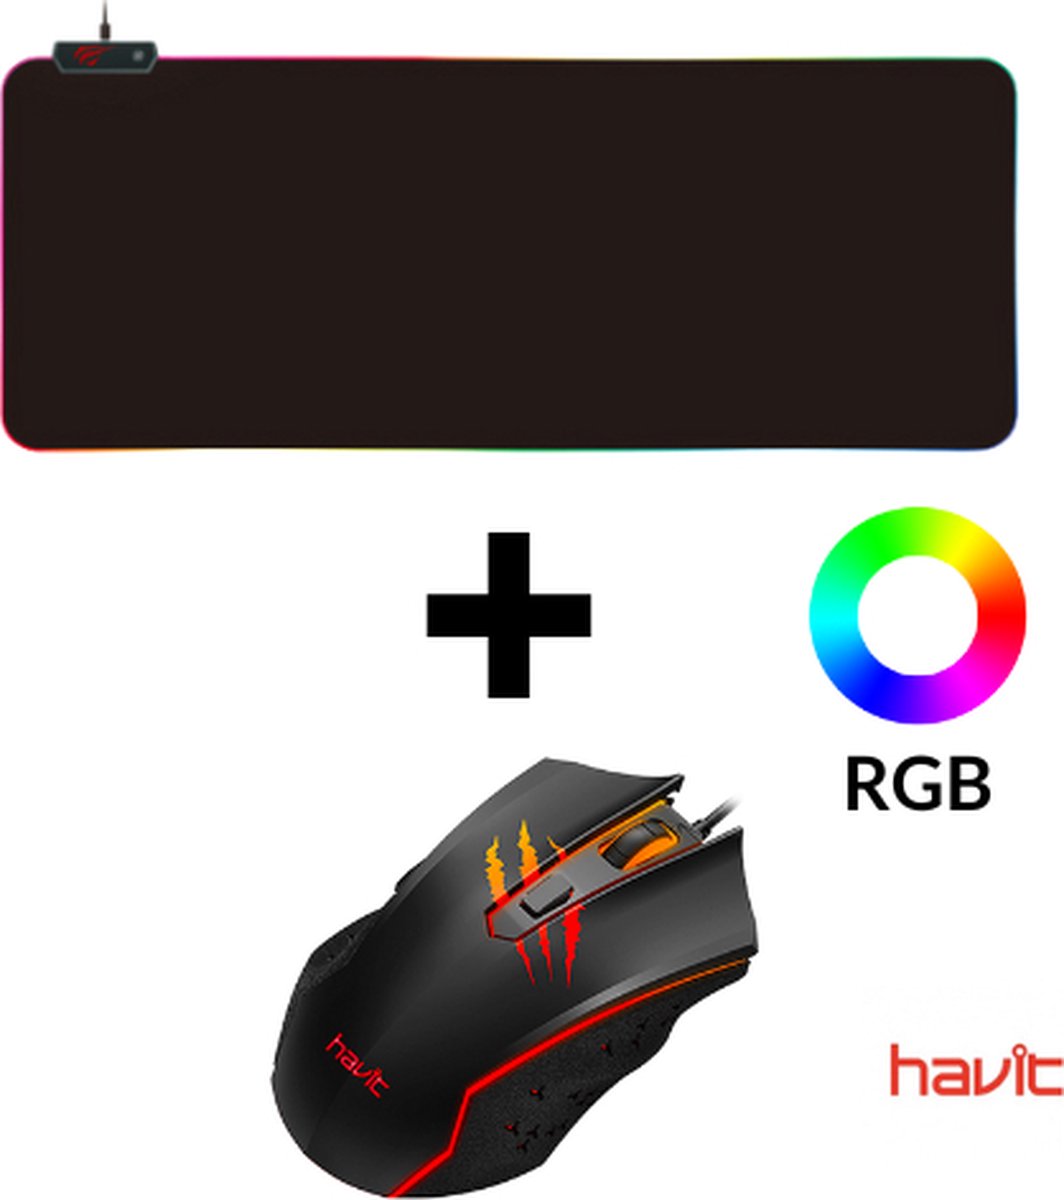 Havit Gamenote MS1027 RGB muis + XXL RGB muismat HV-MP903A